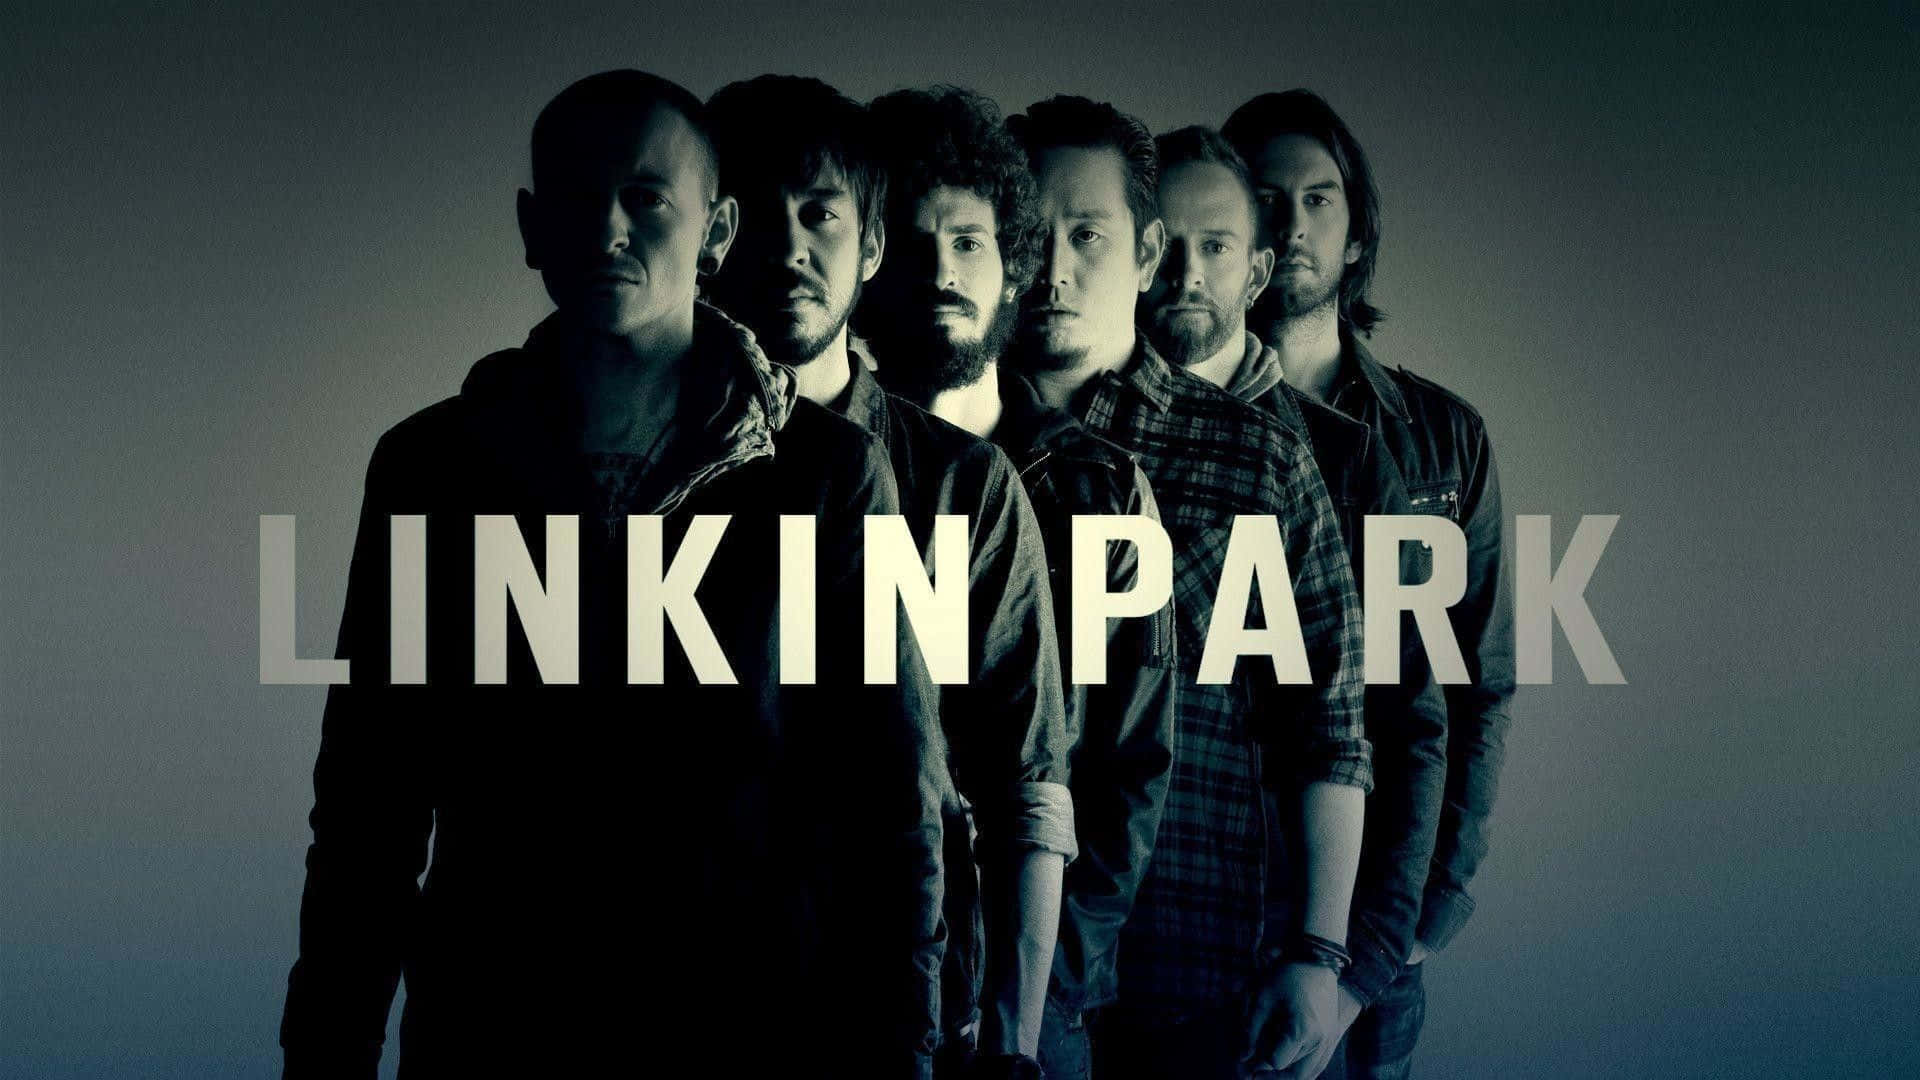 Linkinpark En Su Mejor Momento De Estrella Del Rock Fondo de pantalla